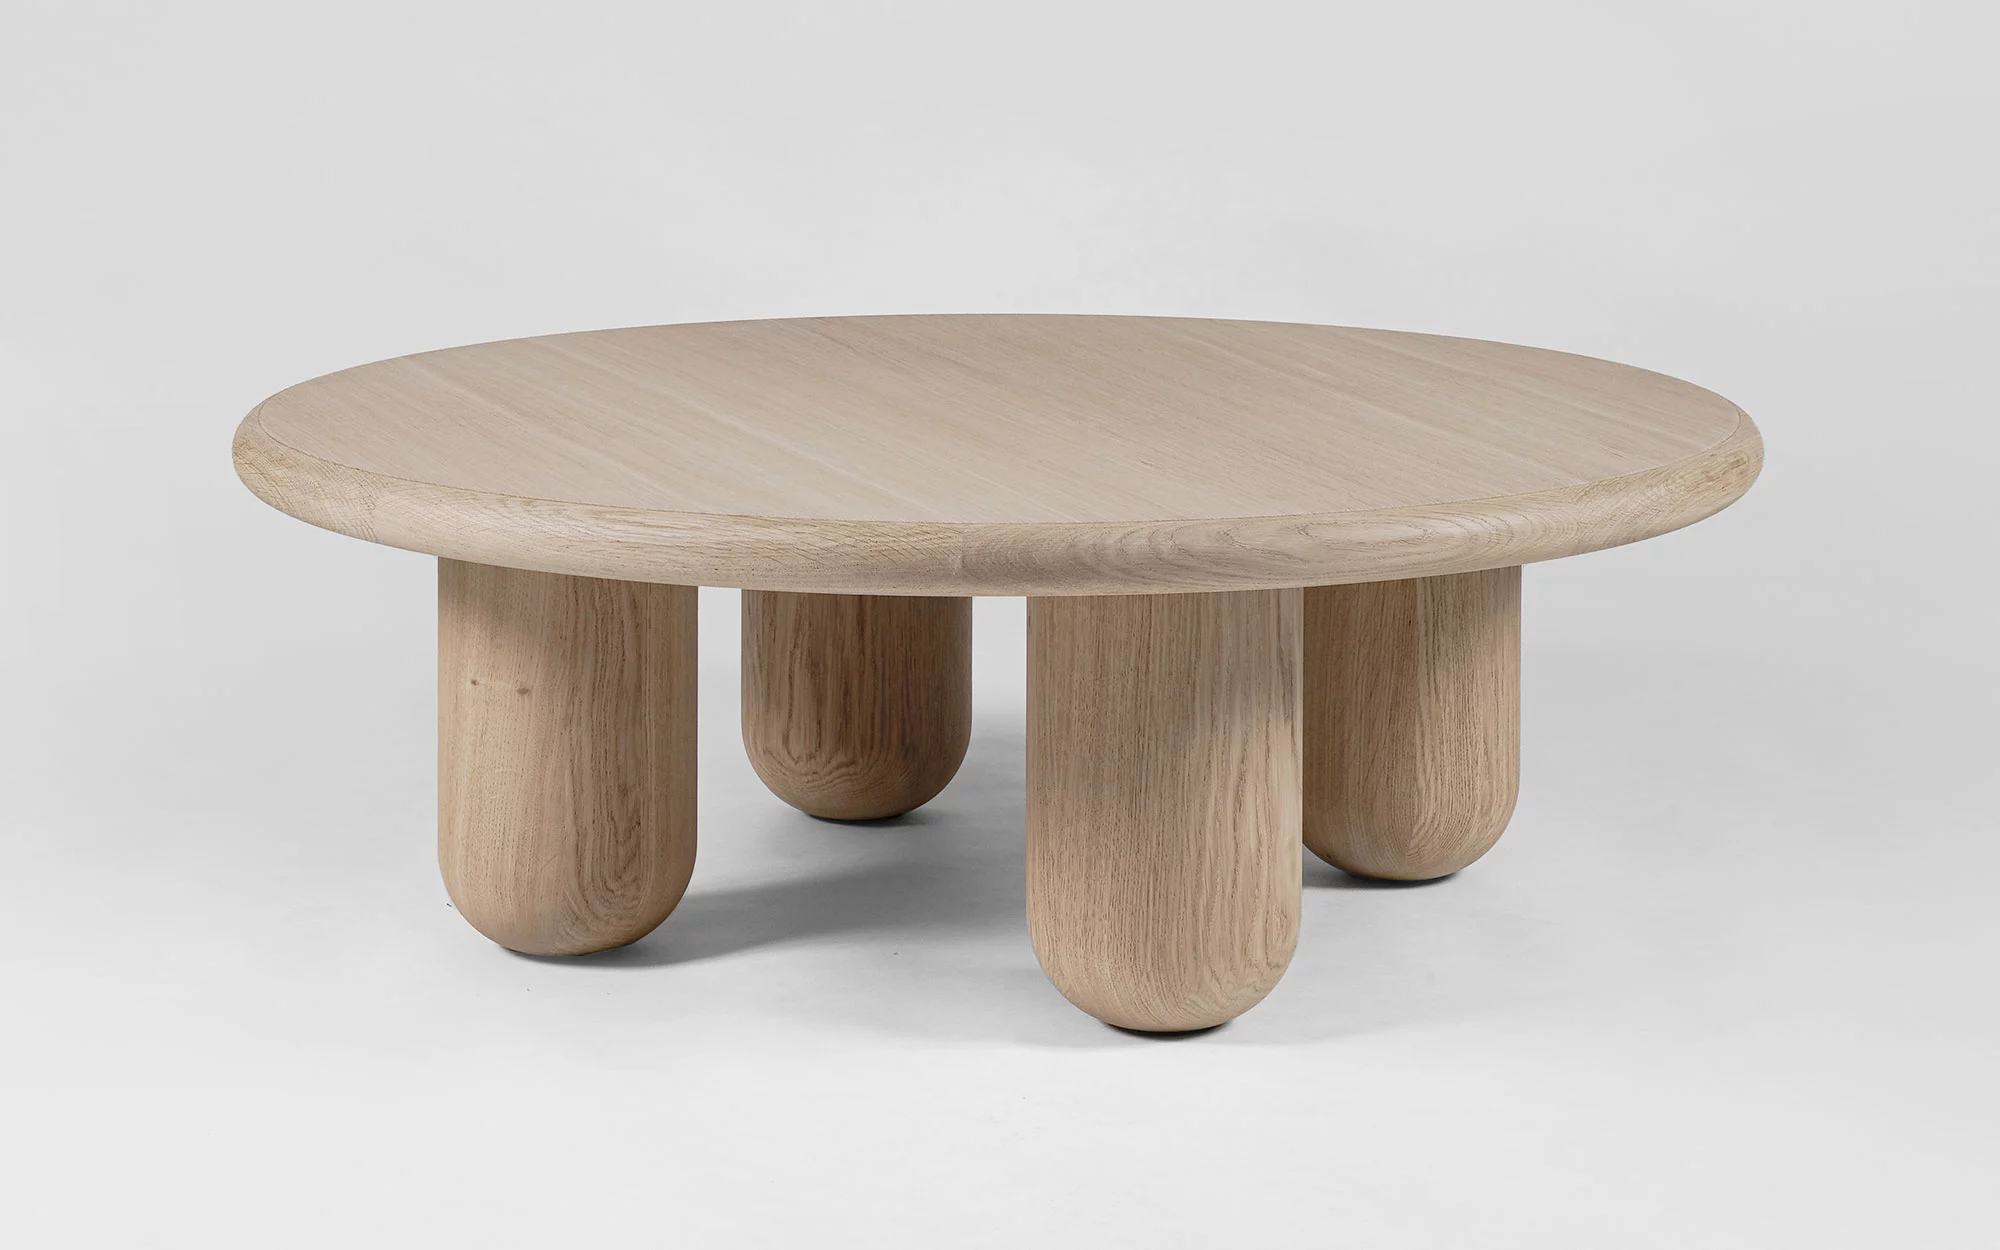 Organism coffee table - Jaime Hayon - Storage - Galerie kreo